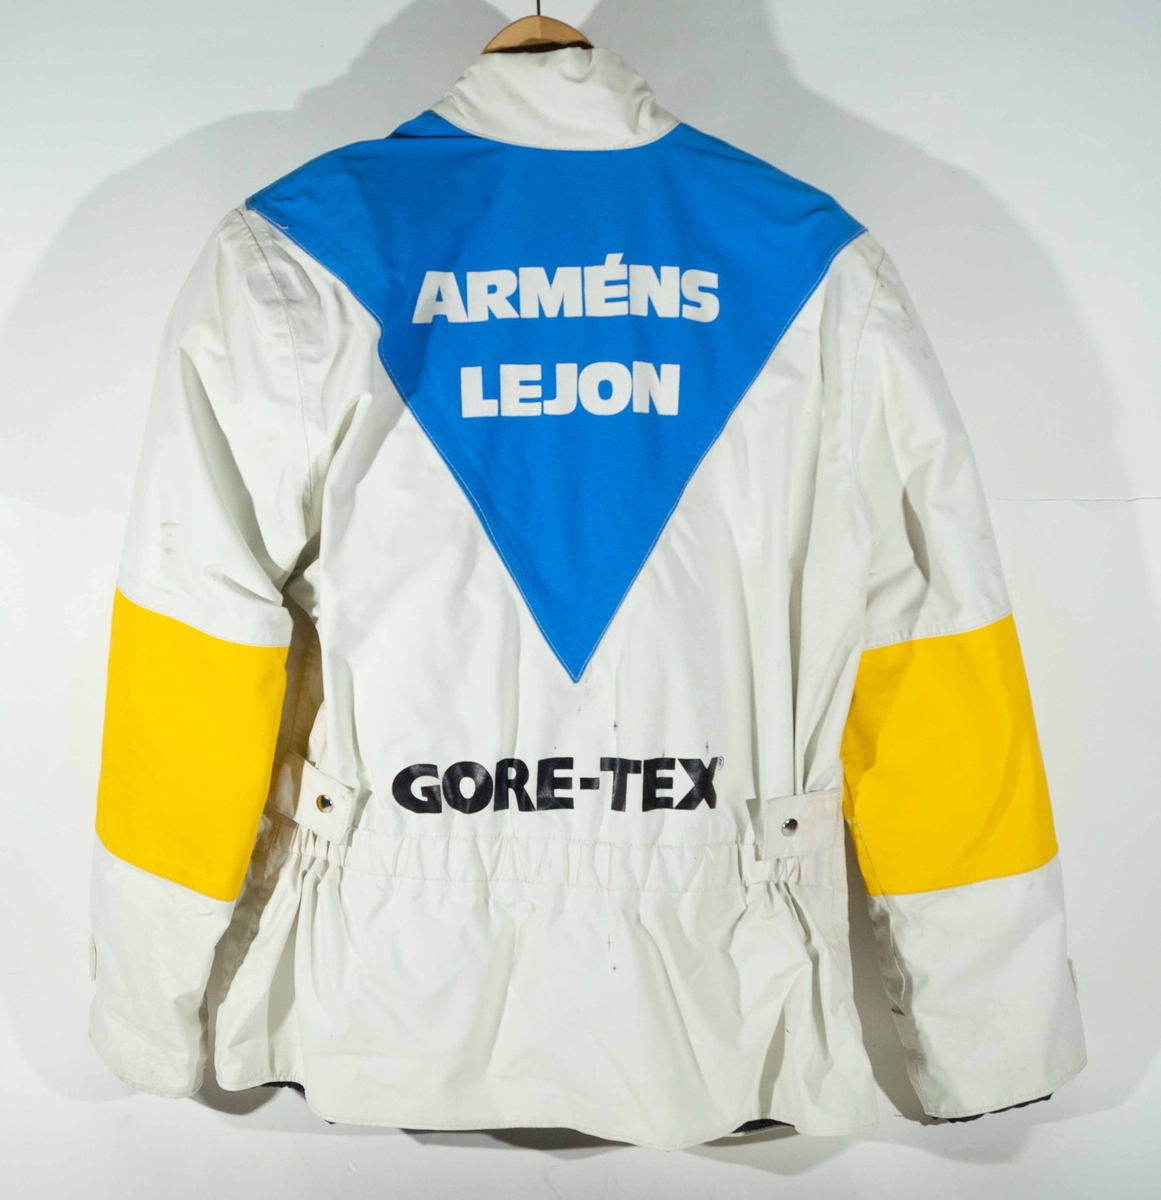 Vitt MC-ställ med jacka och byxor med blå och gula detaljer.  På vänster sida av bröstet på jackan "Armén" och på ryggen "Arméns Lejon" och "Gore-Tex".